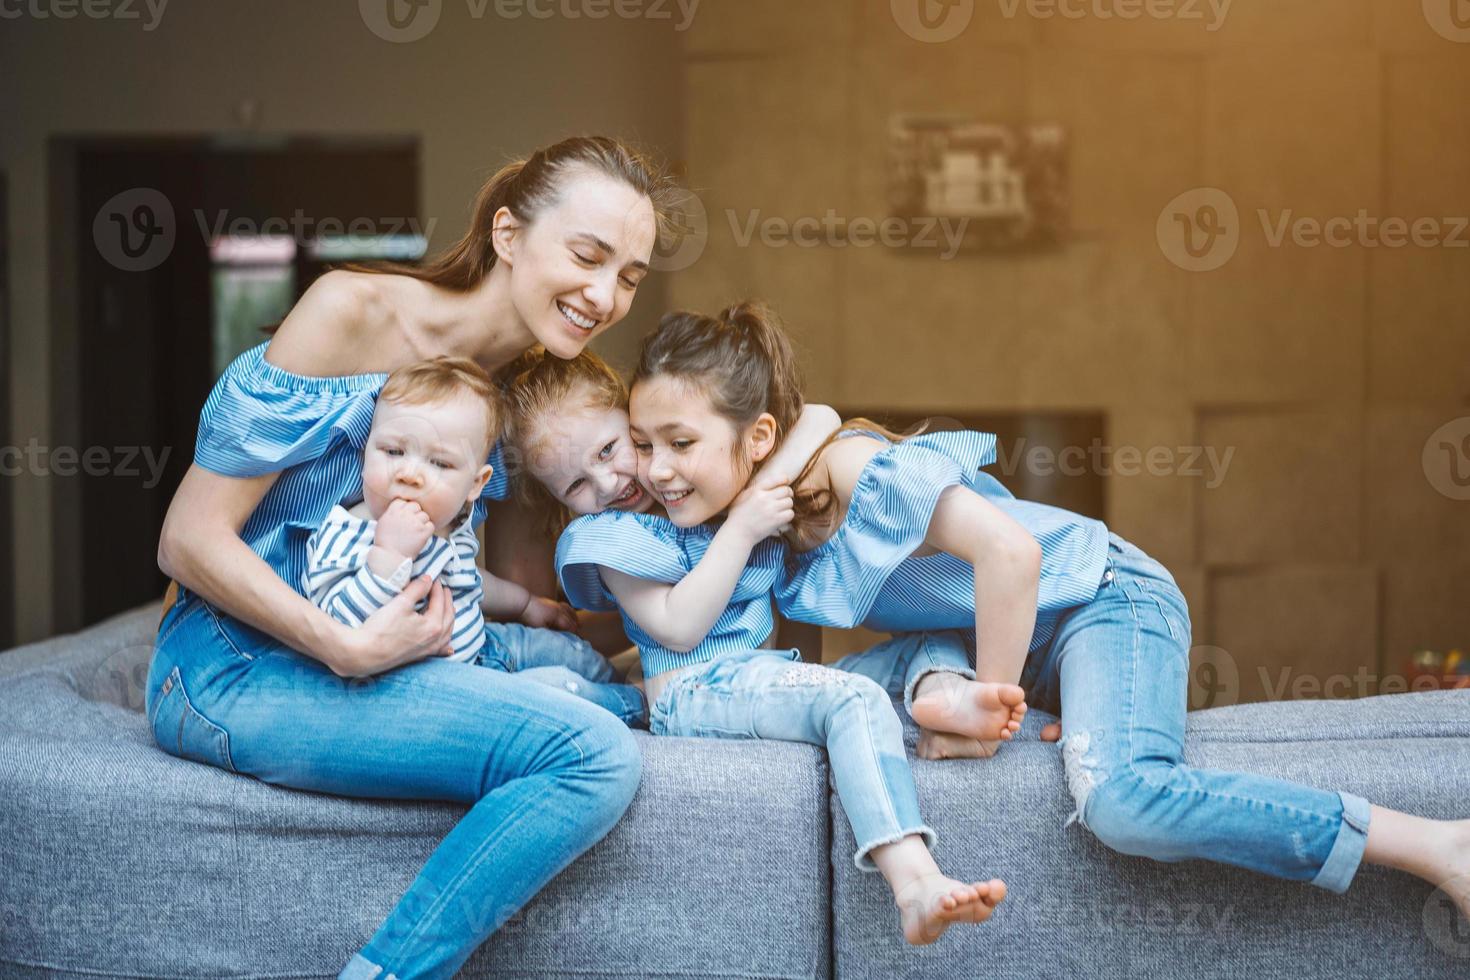 mãe, duas filhas e um filho pequeno no sofá foto